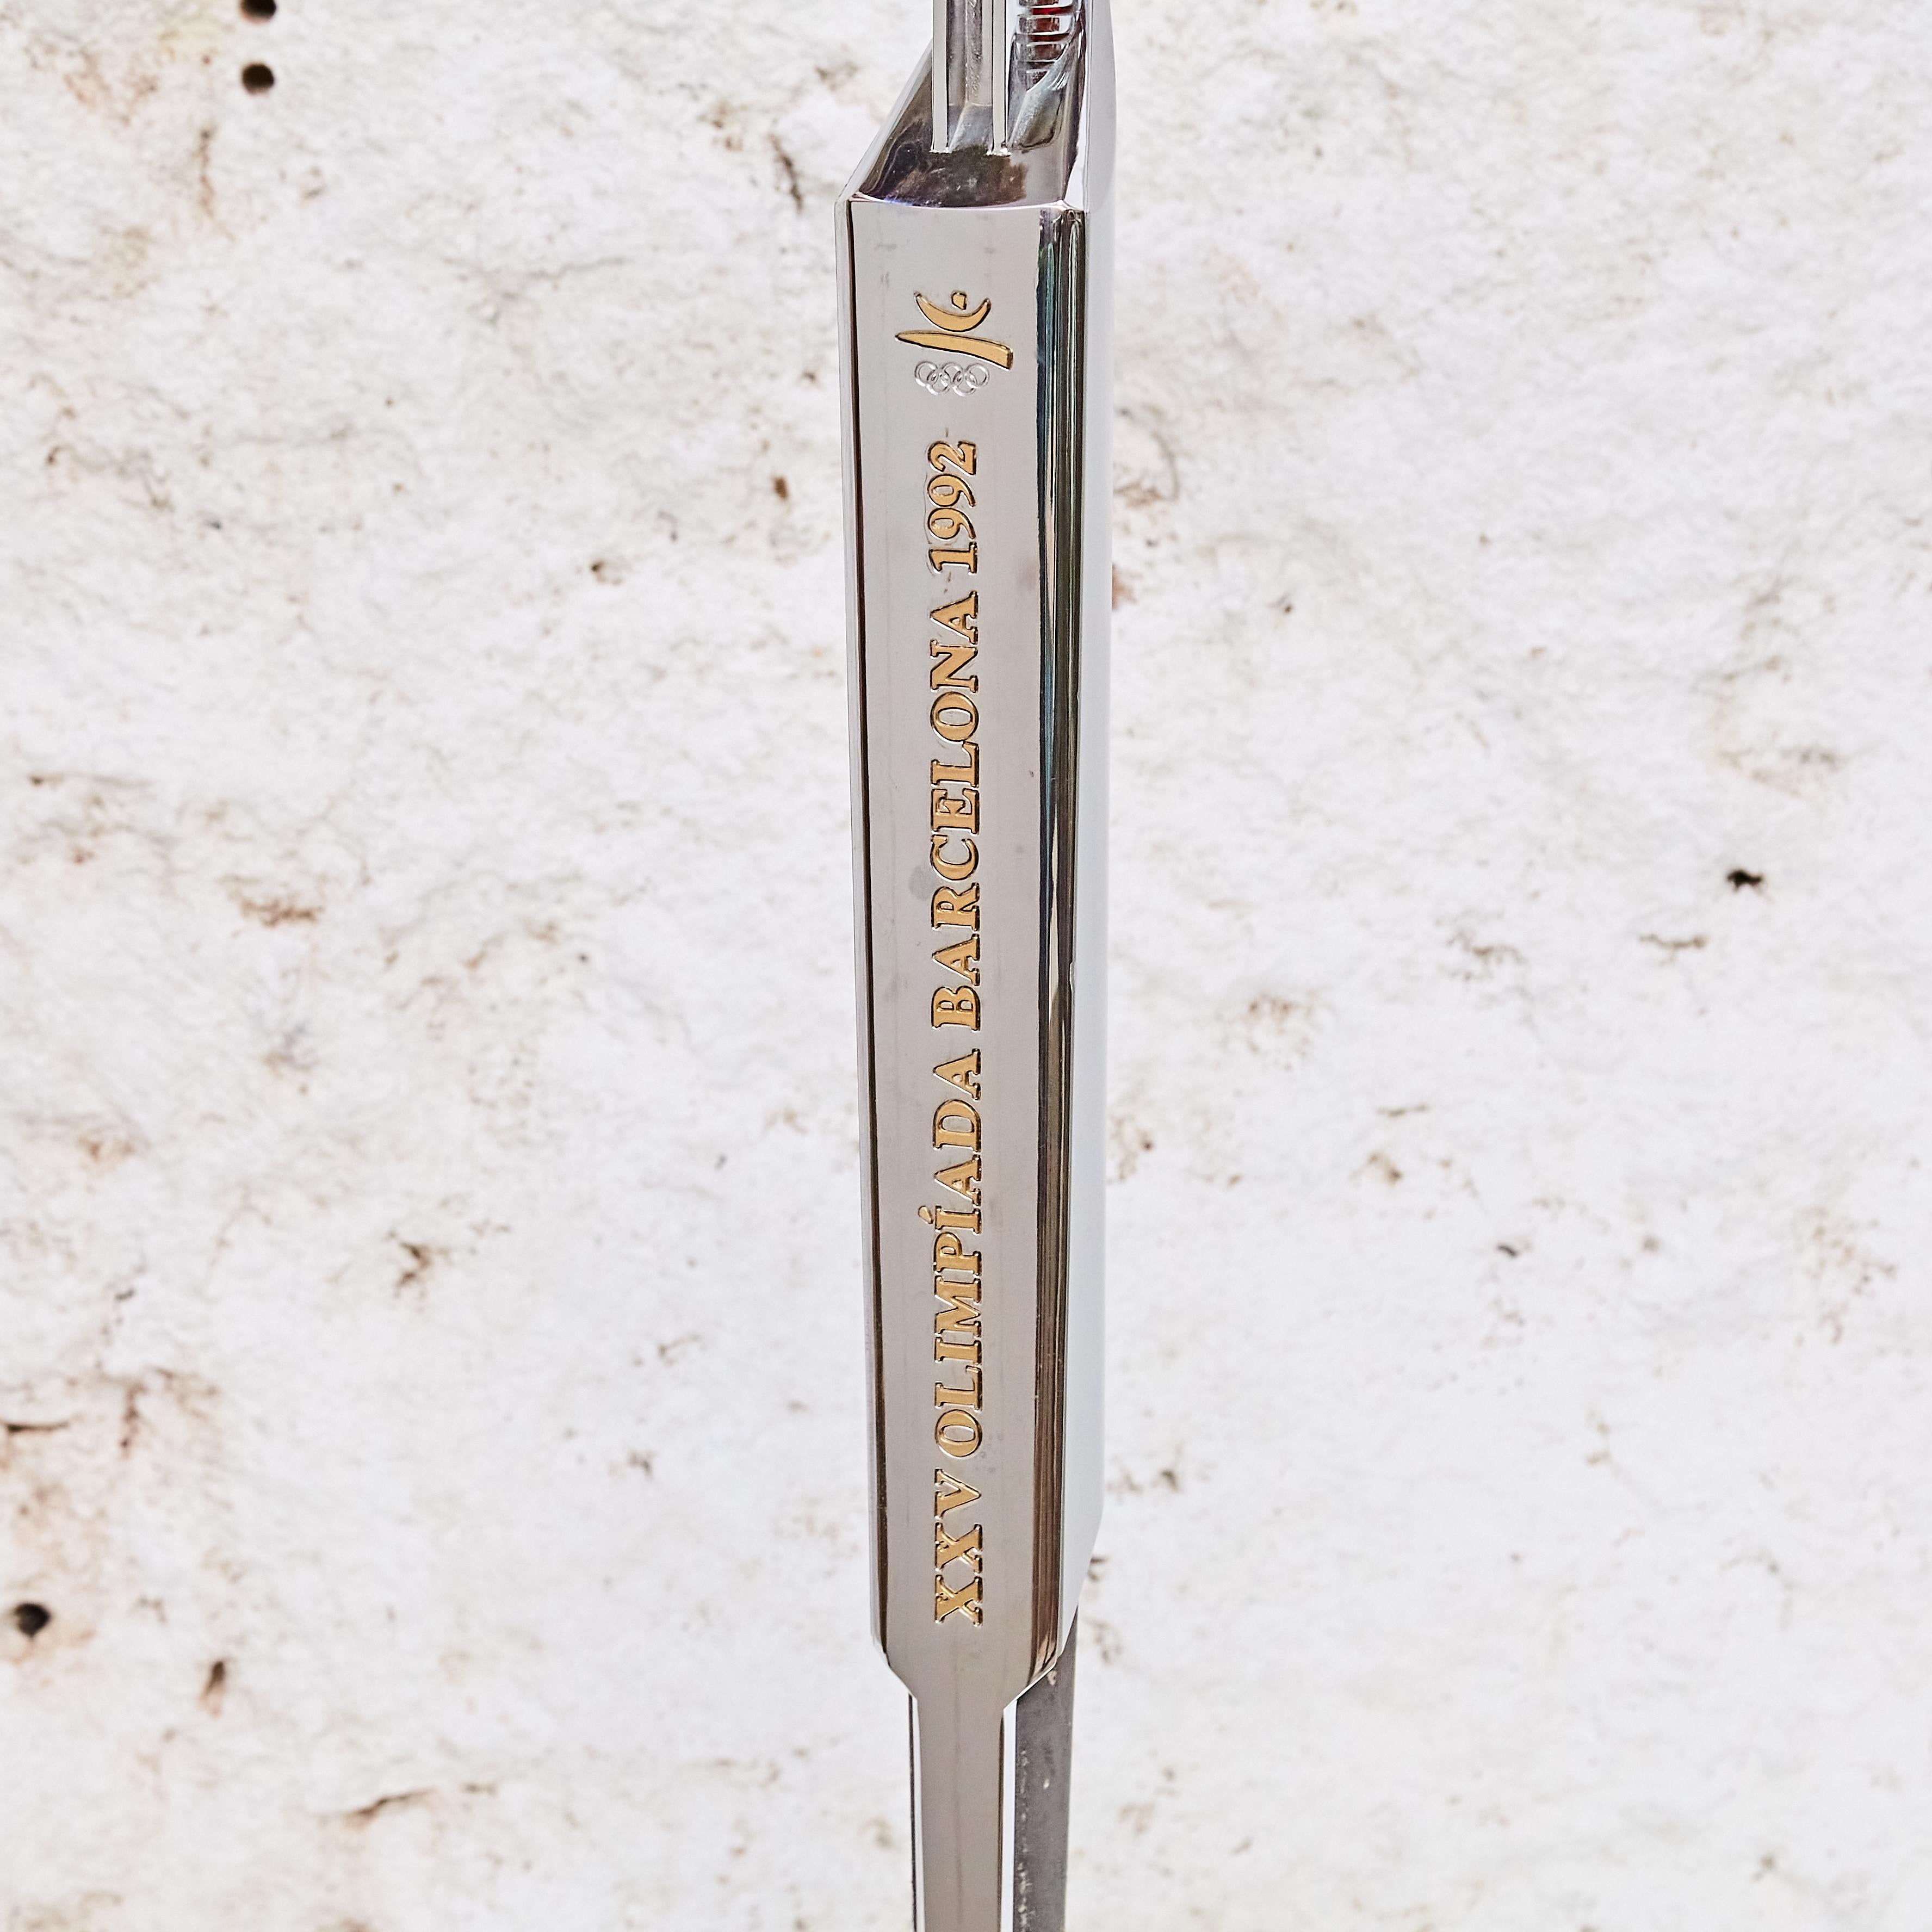 Prototyp der olympischen Fackel (PT) aus verchromtem Kunststoff für Barcelona '92 von André Ricard.

Hergestellt in Spanien, ca. 1990.

In gutem Originalzustand, mit im Einklang mit Alter und Nutzung, die Erhaltung einer schönen Patina mit